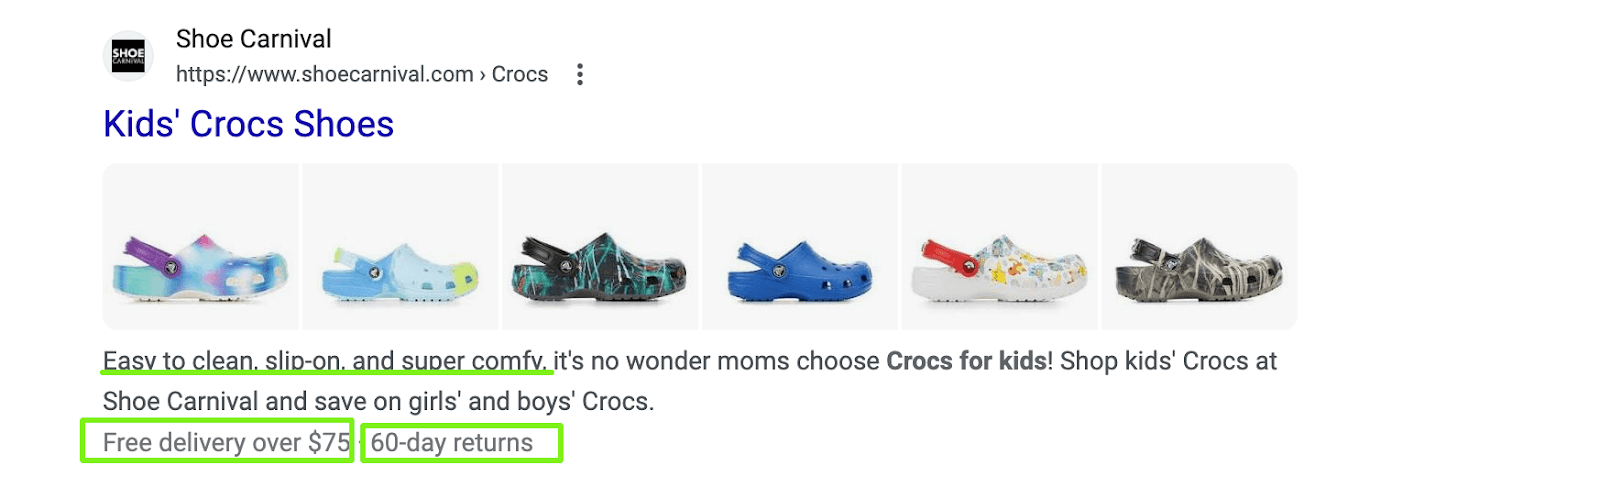 Kids Crocs Description Details